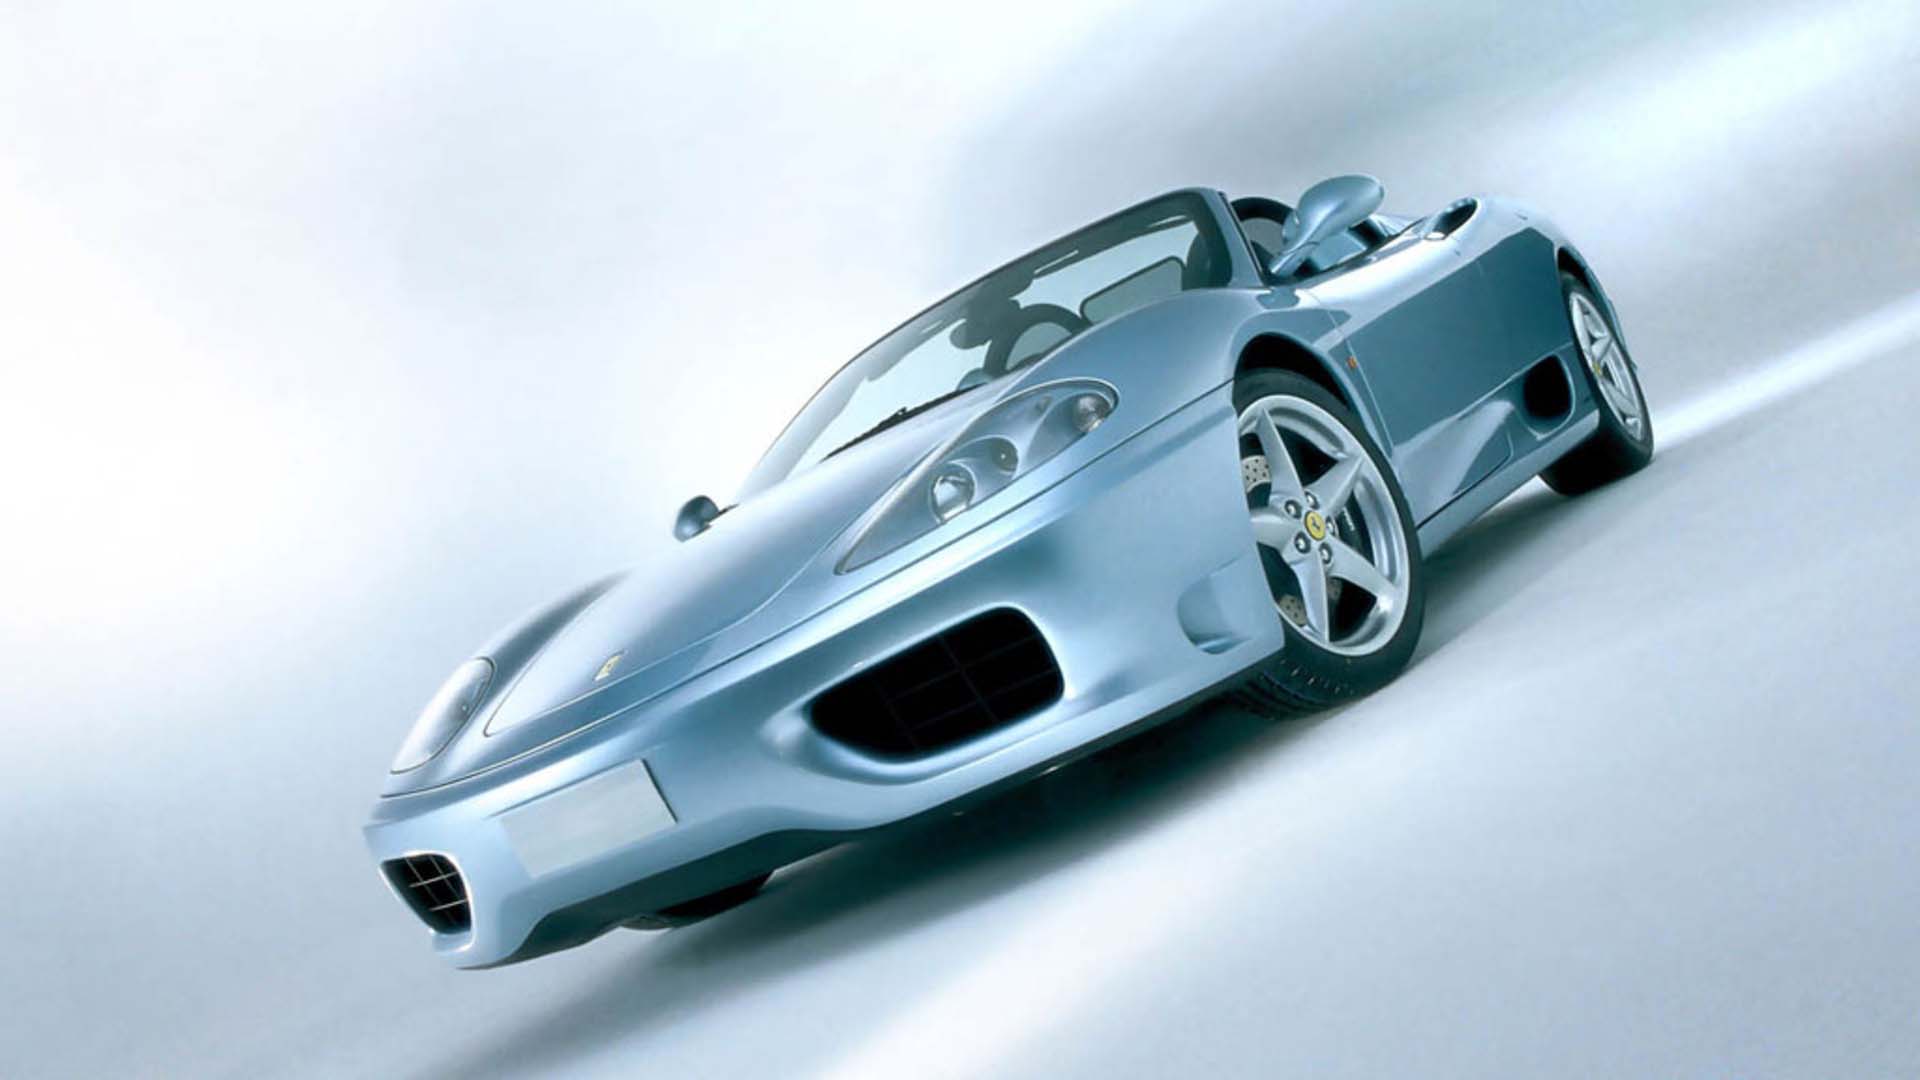 Best Top 20 Ferrari Wallpaper Gallery. - Original Preview - PIC